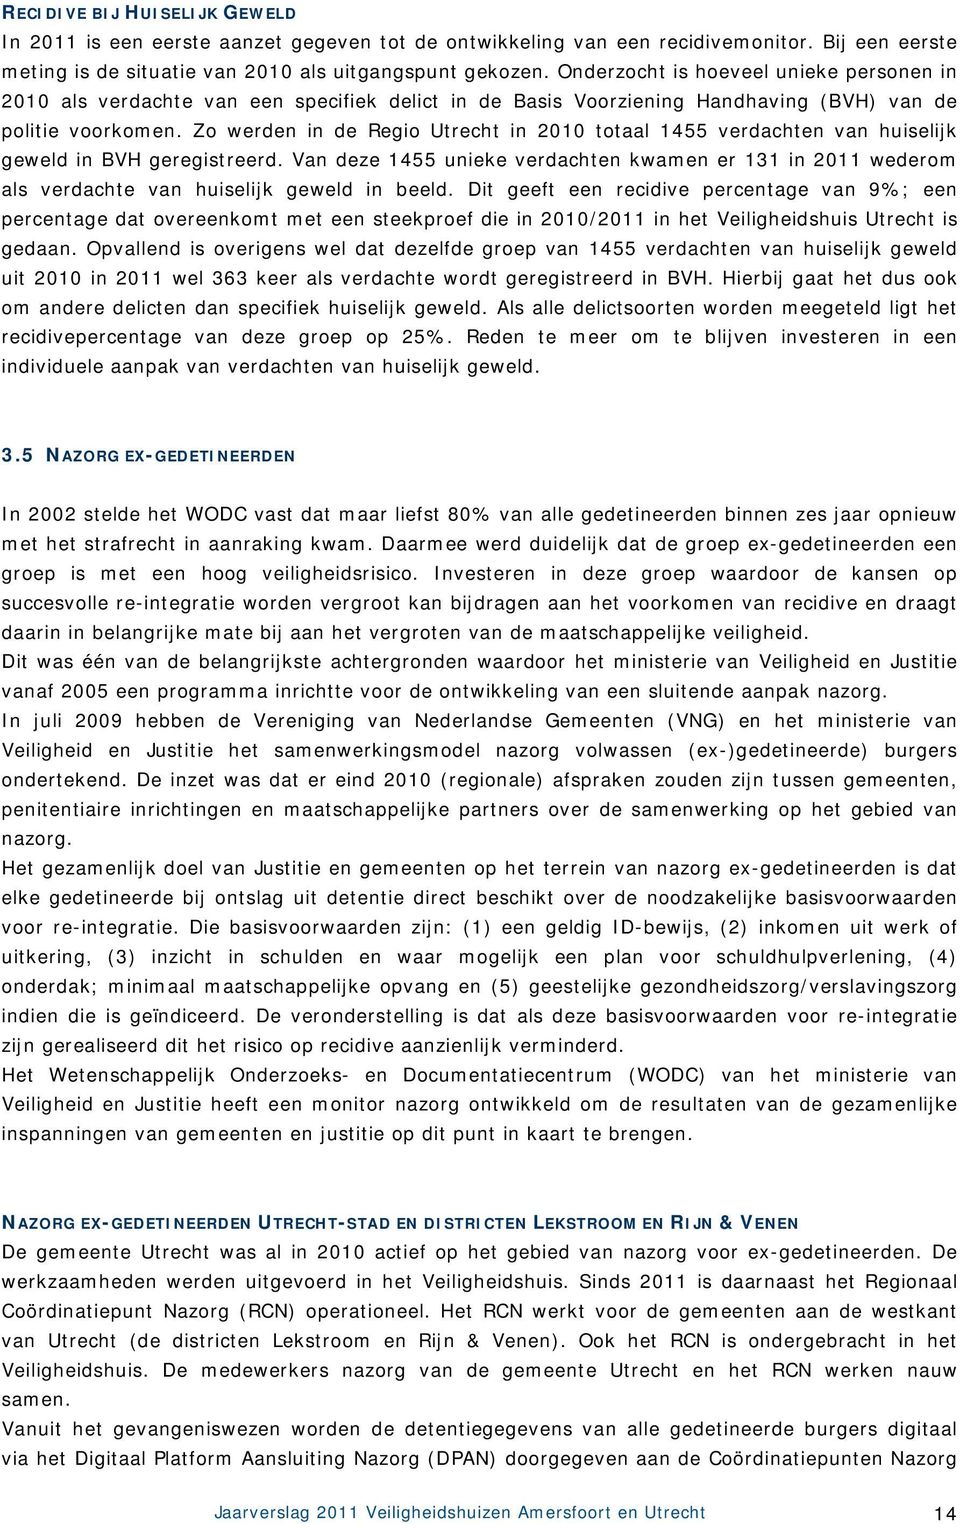 Zo werden in de Regio Utrecht in 2010 totaal 1455 verdachten van huiselijk geweld in BVH geregistreerd.